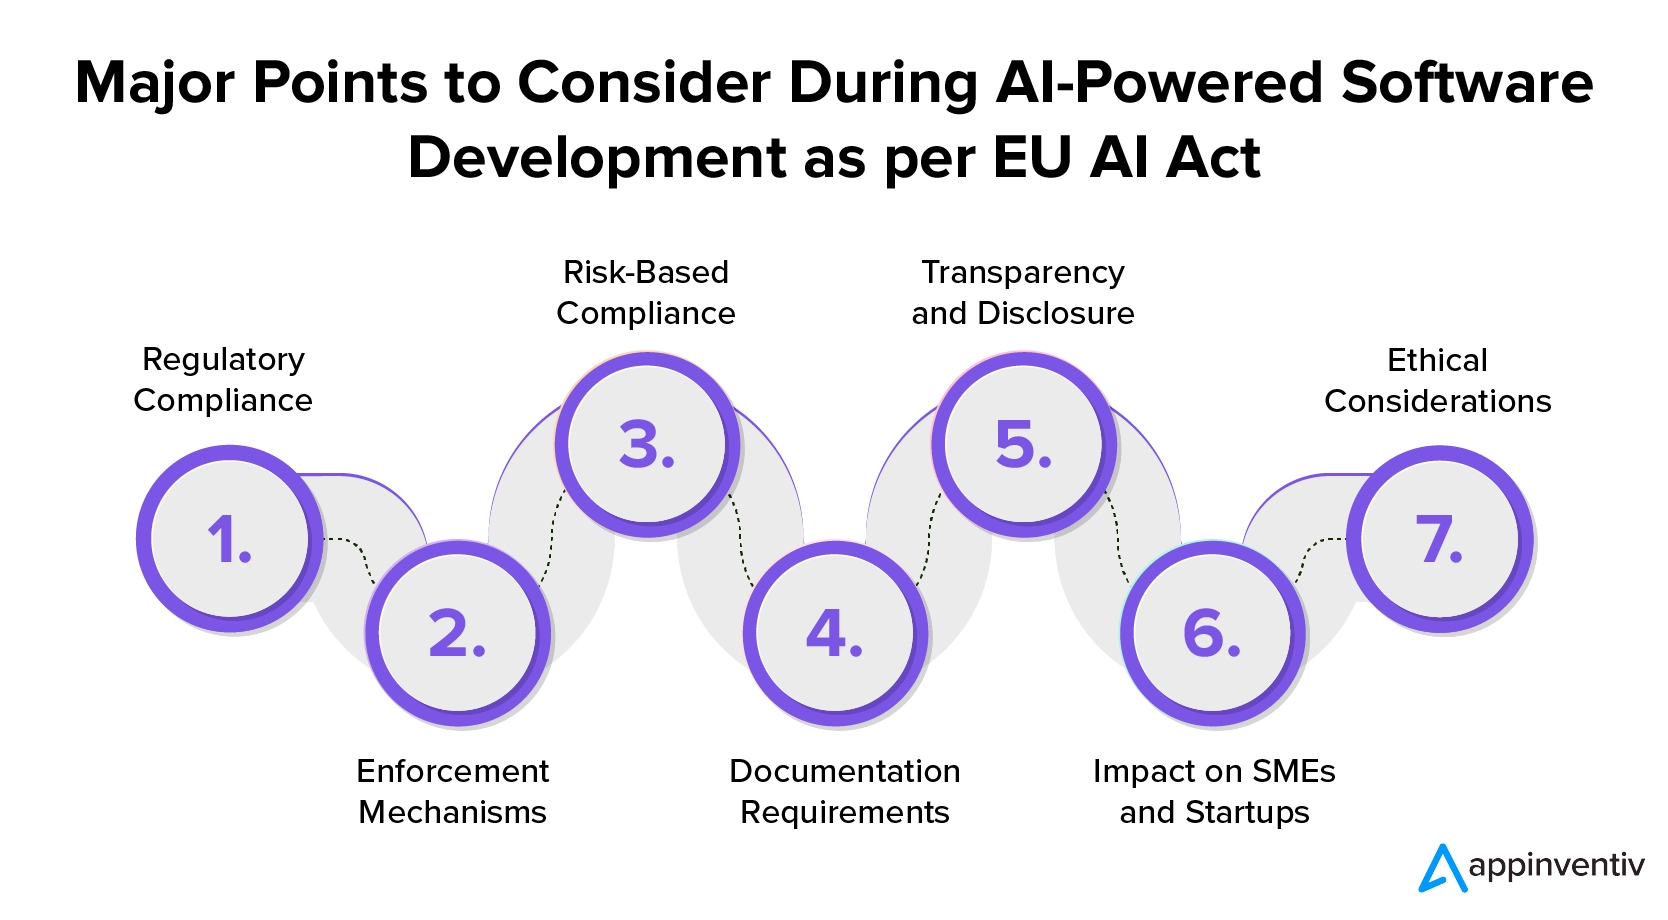 EU AI 法に従って AI を活用したソフトウェア開発中に考慮すべき主要なポイント